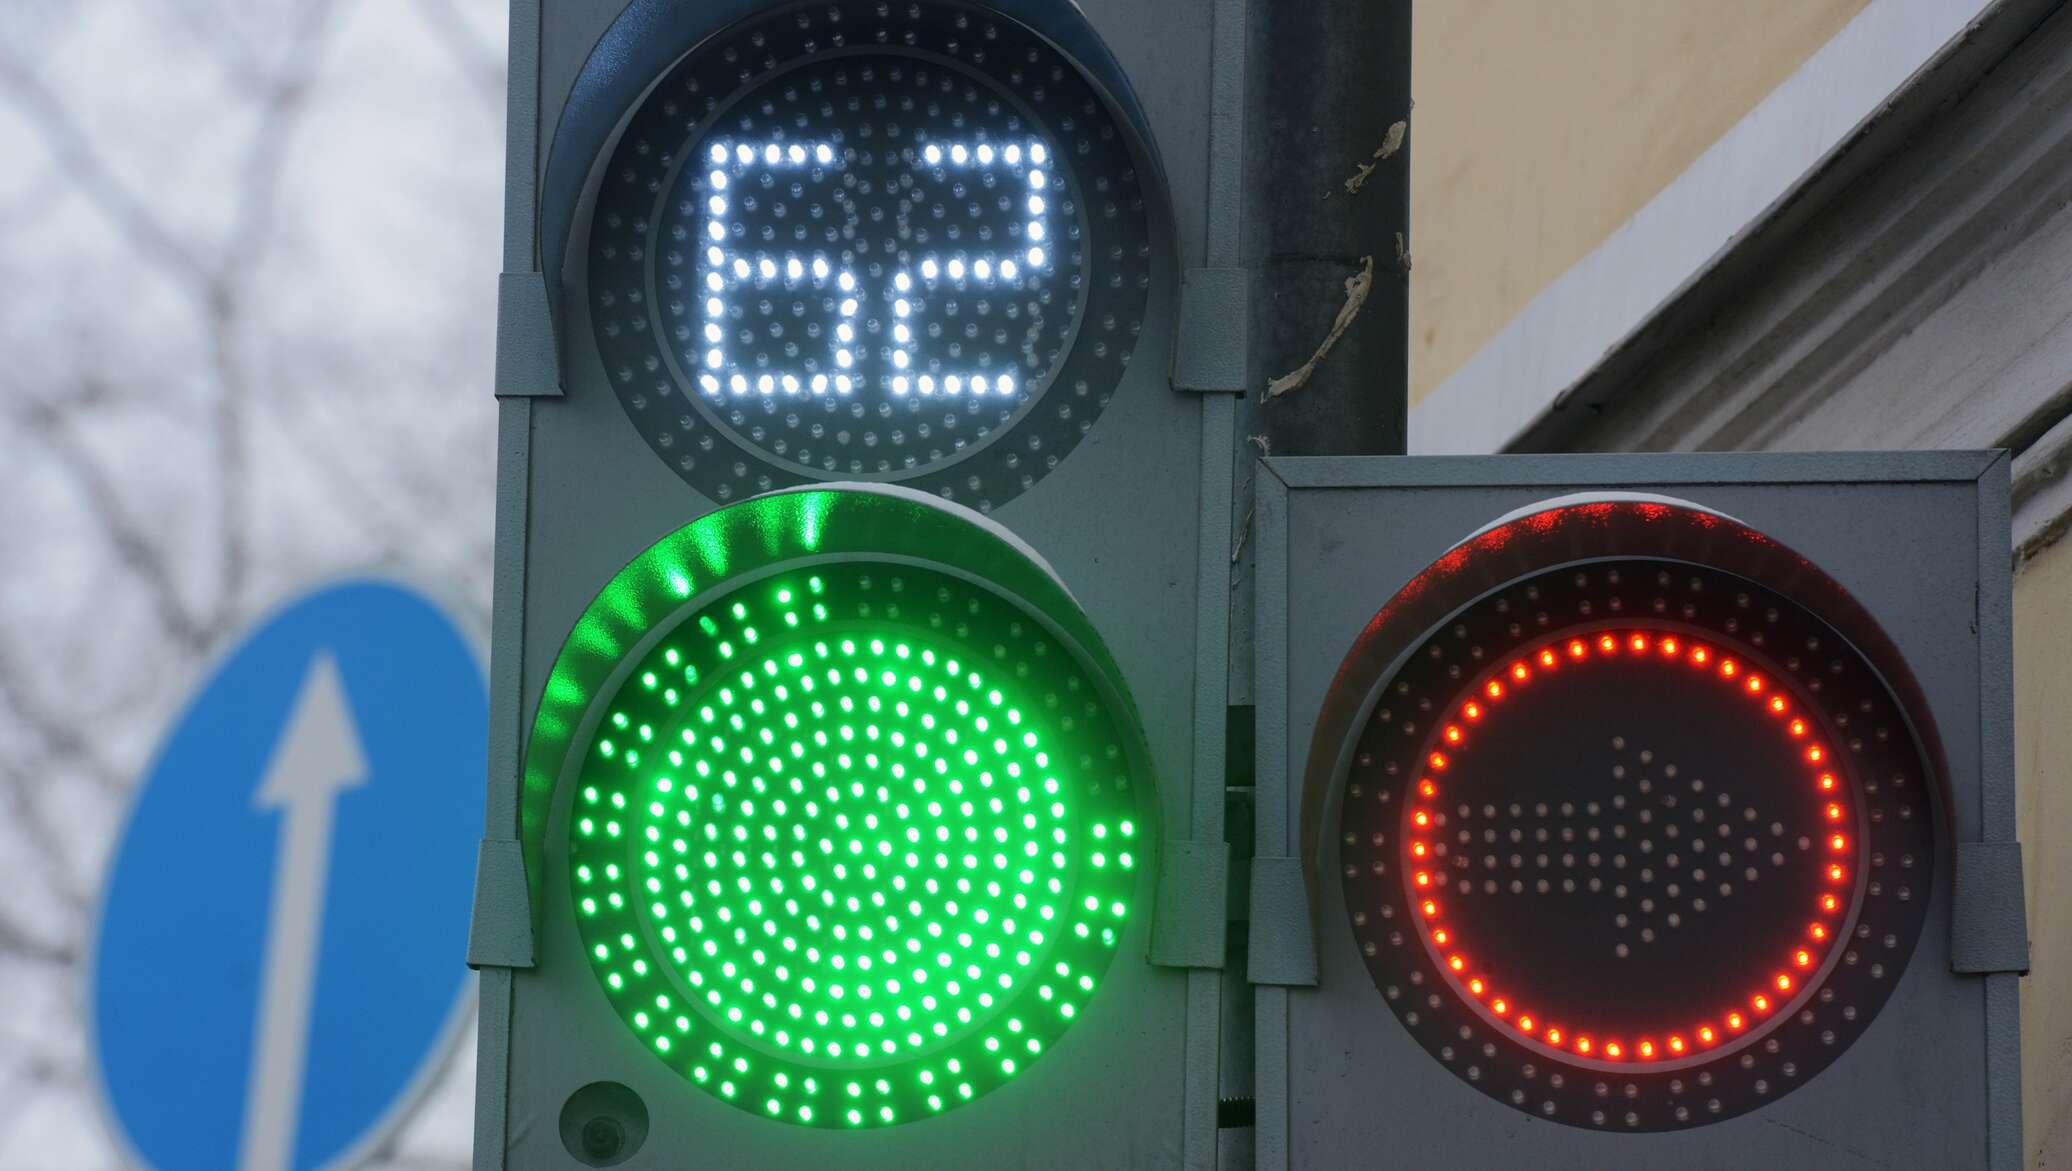 Светофор на комендантском. Светофор светодиодный транспортный т.1.2 с ТООВ (300 мм). Светофор светодиодный двухсекционный красный зеленый. Светофор с цифрами. Зеленый сигнал светофора.